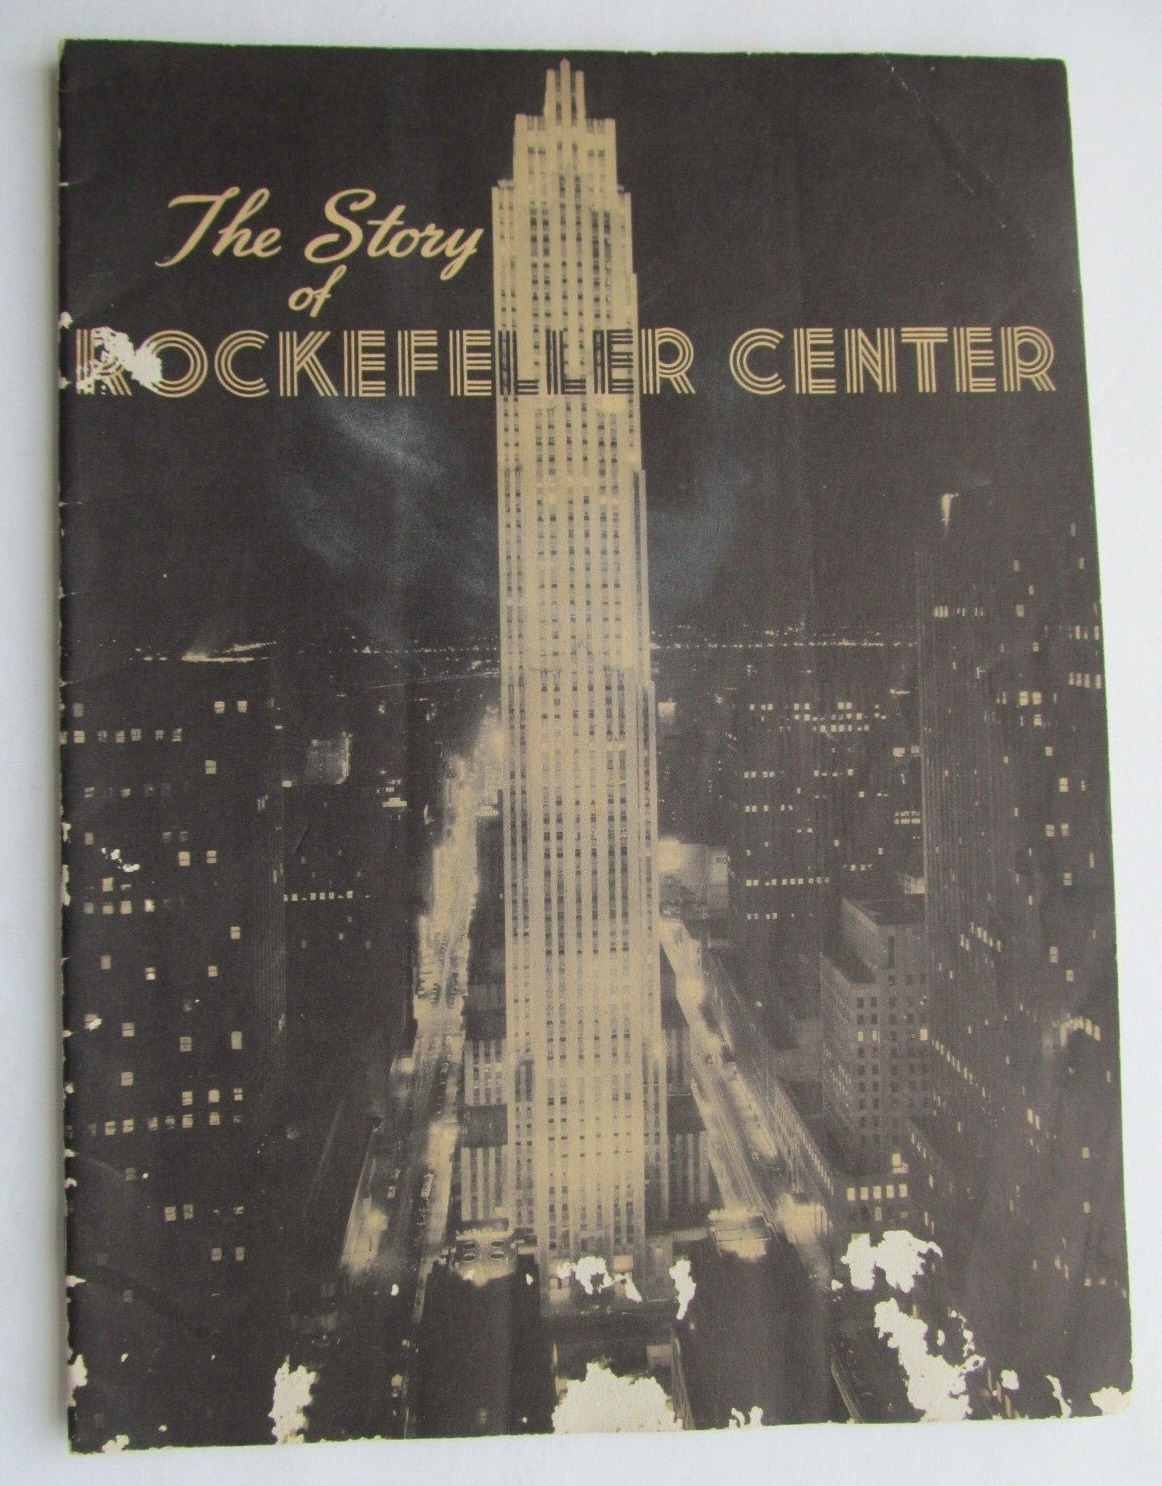 The Story of Rockefeller Center - 1942 Booklet (New York City)